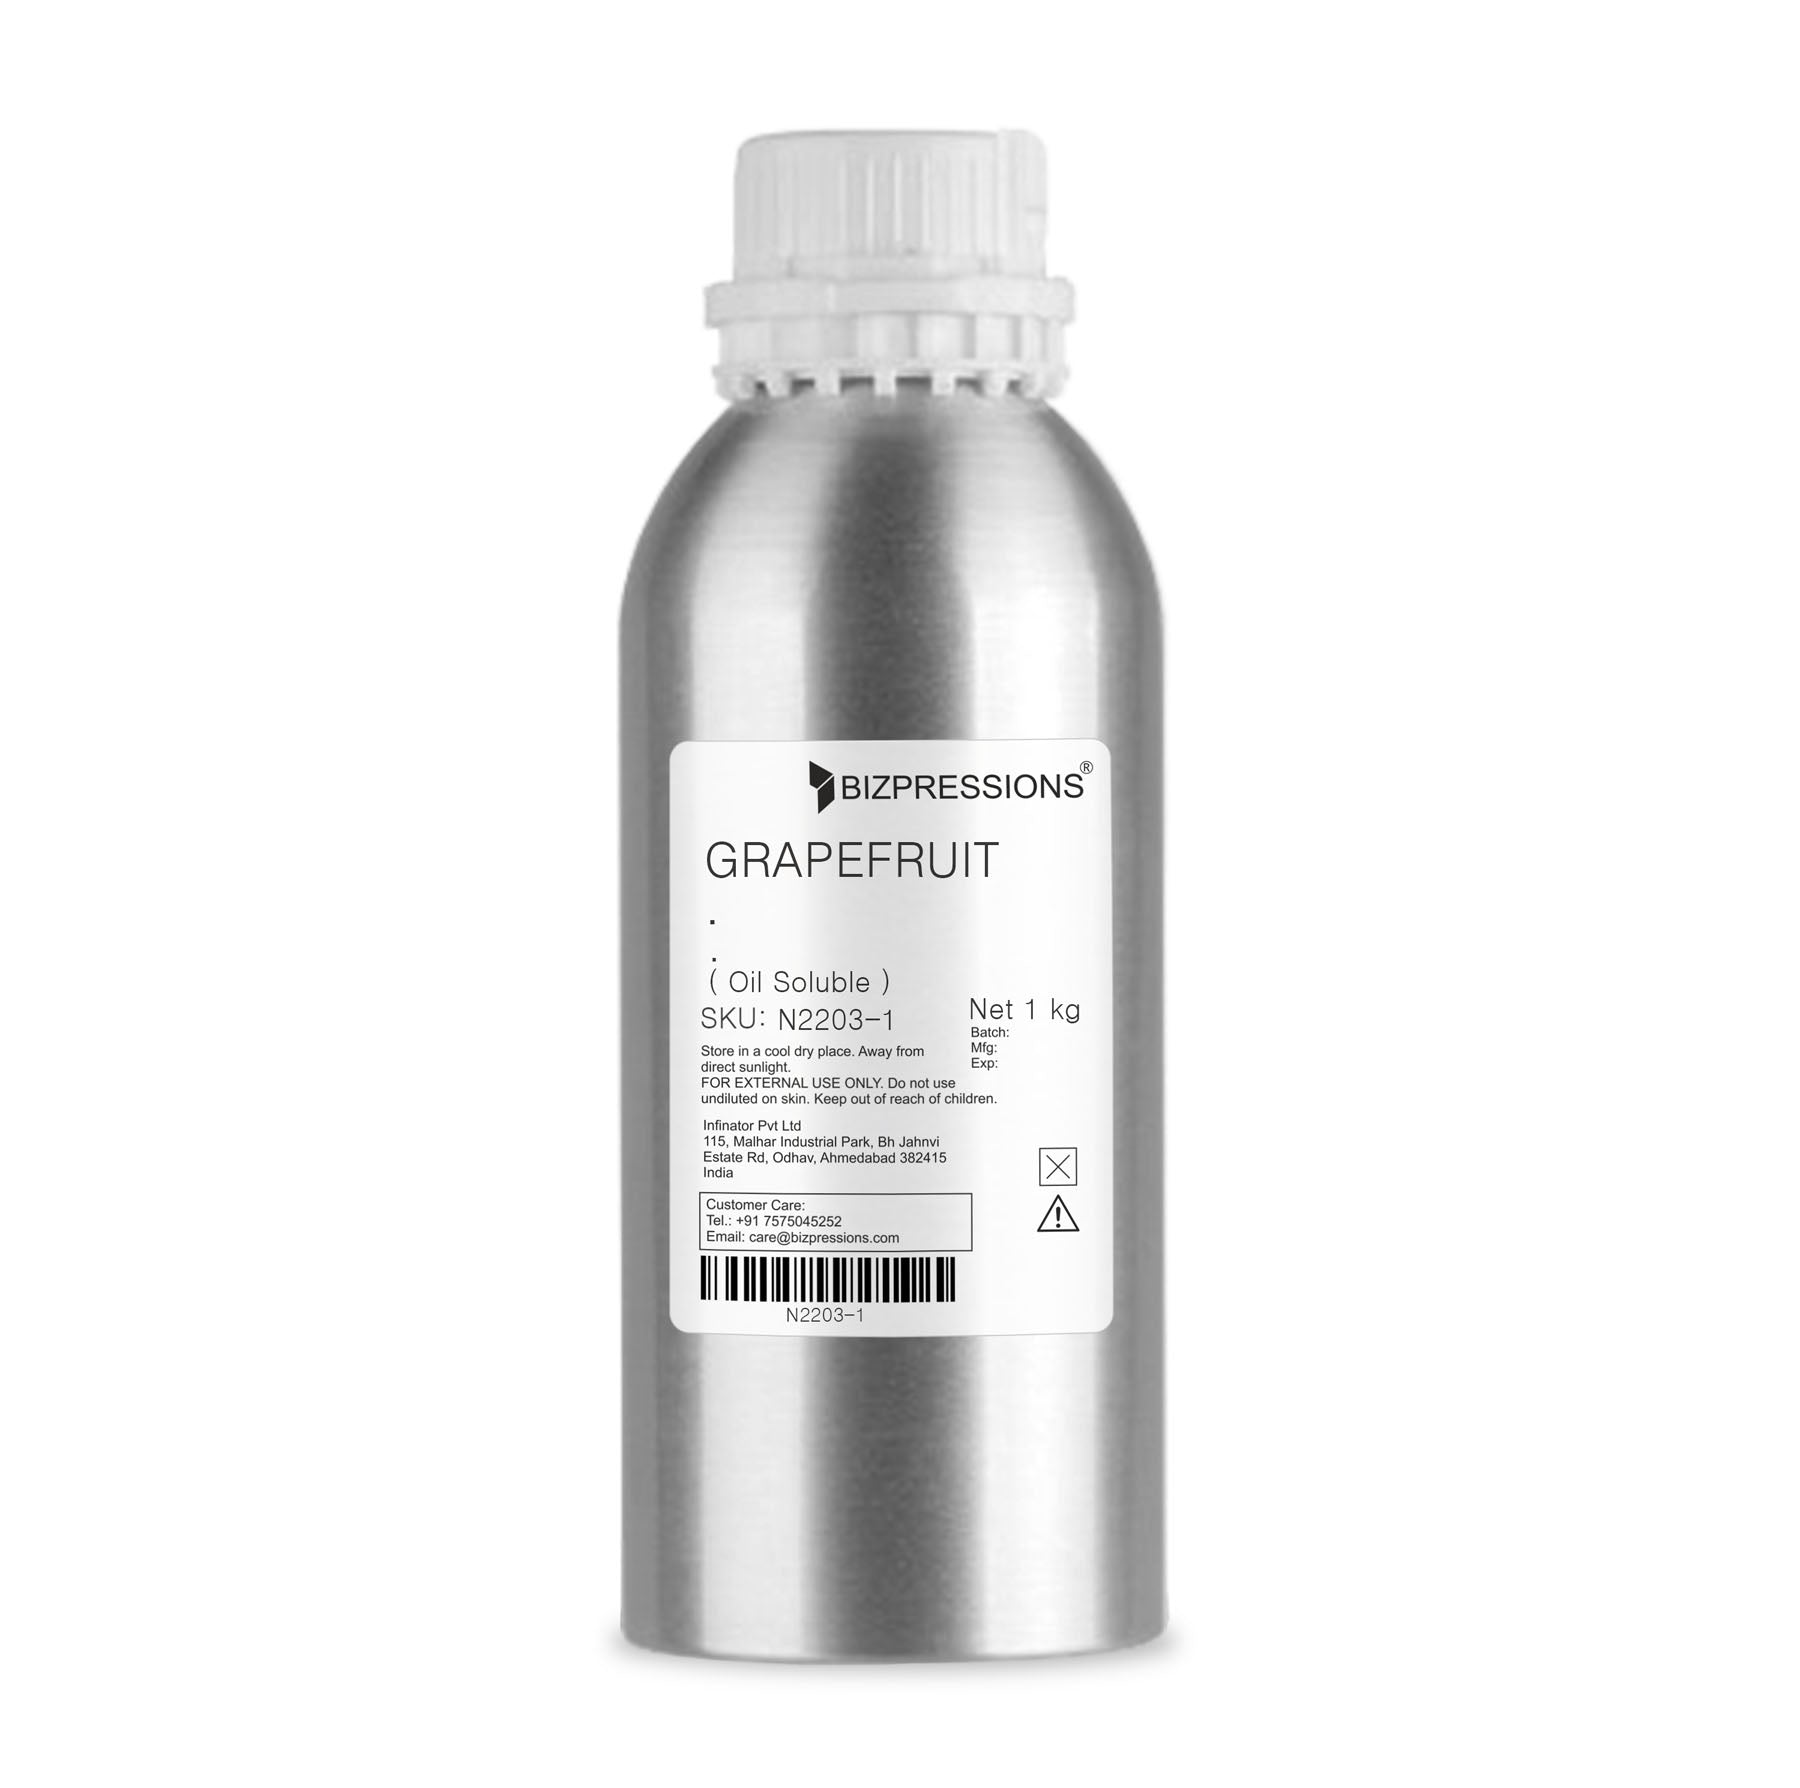 GRAPEFRUIT - Fragrance ( Oil Soluble ) - 1 kg